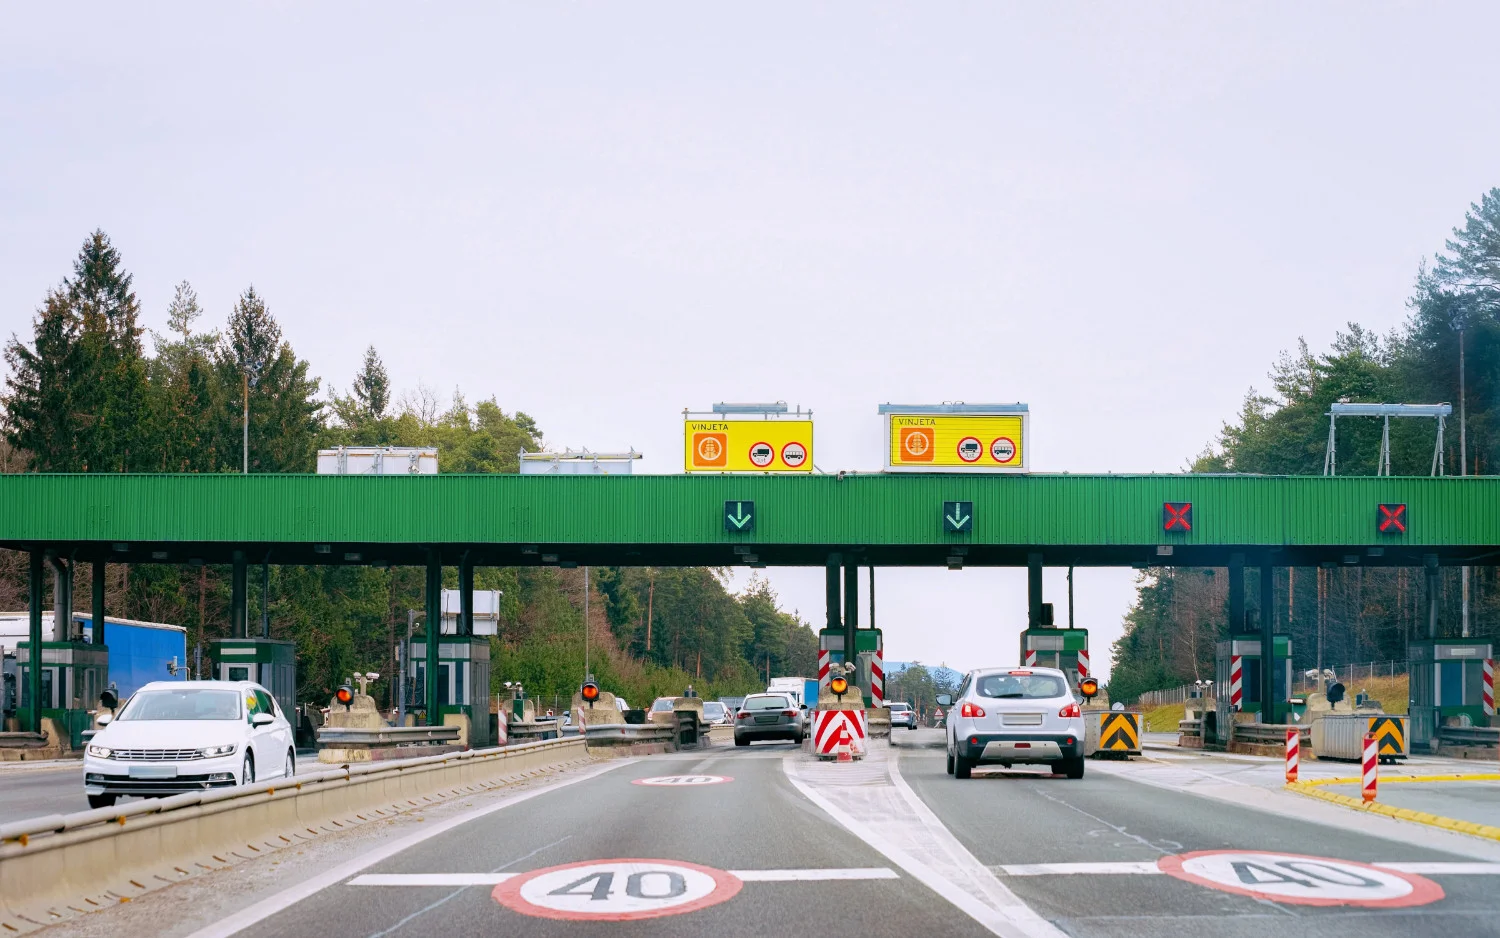 Za korištenje autocesta u Sloveniji, cestarine (gdje je primjenjivo) plaćaju se pomoću obvezne elektronske oznake, poznate kao e-vinjete.